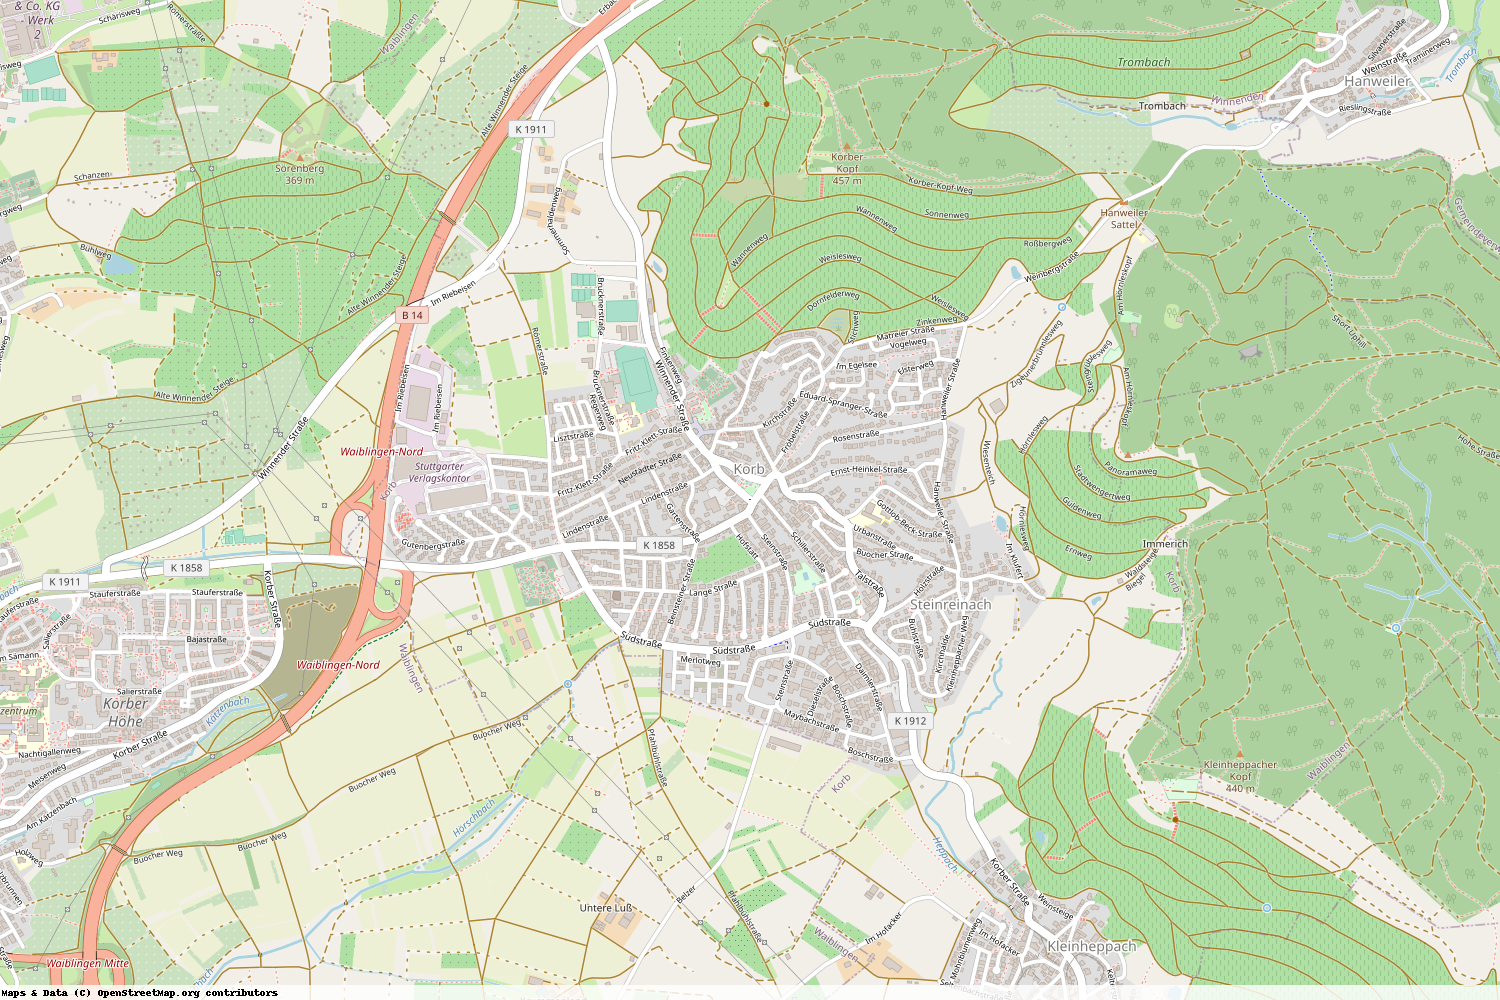 Ist gerade Stromausfall in Baden-Württemberg - Rems-Murr-Kreis - Korb?